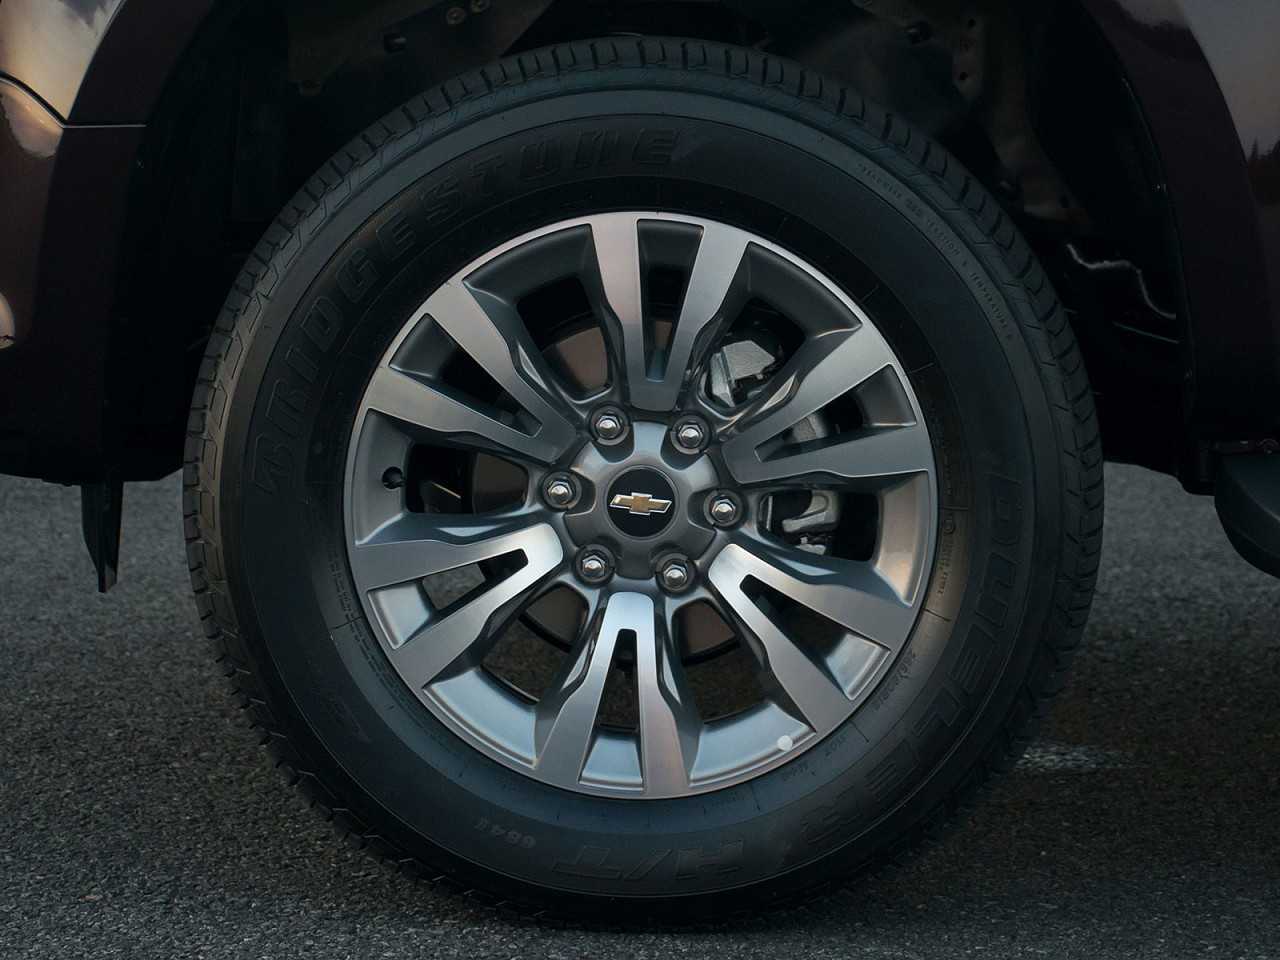 ChevroletTrailBlazer 2017 - rodas